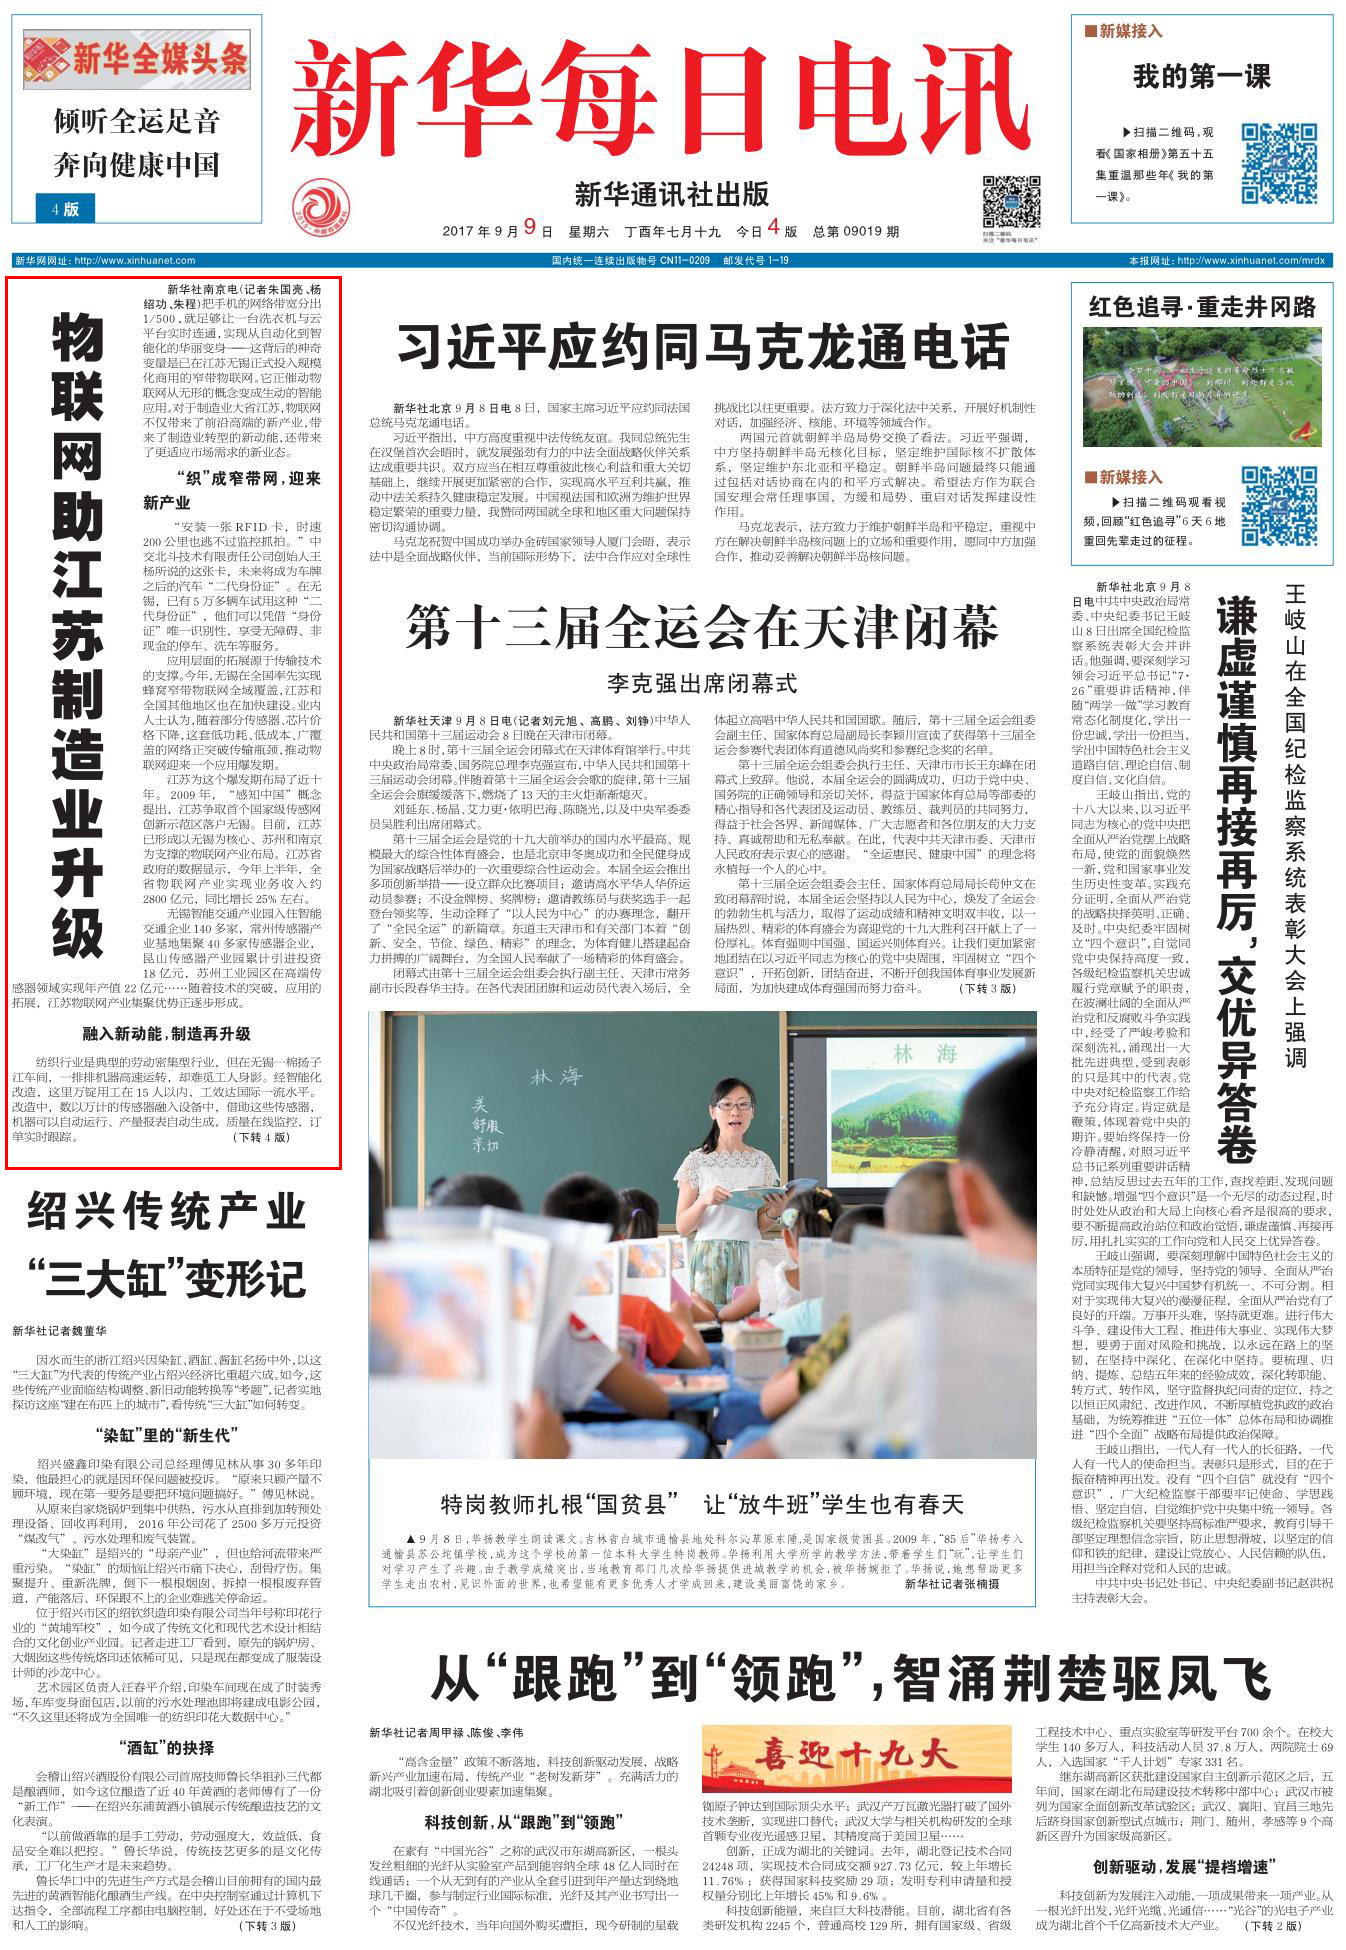 媒體報道：物聯網助江蘇製造業升級